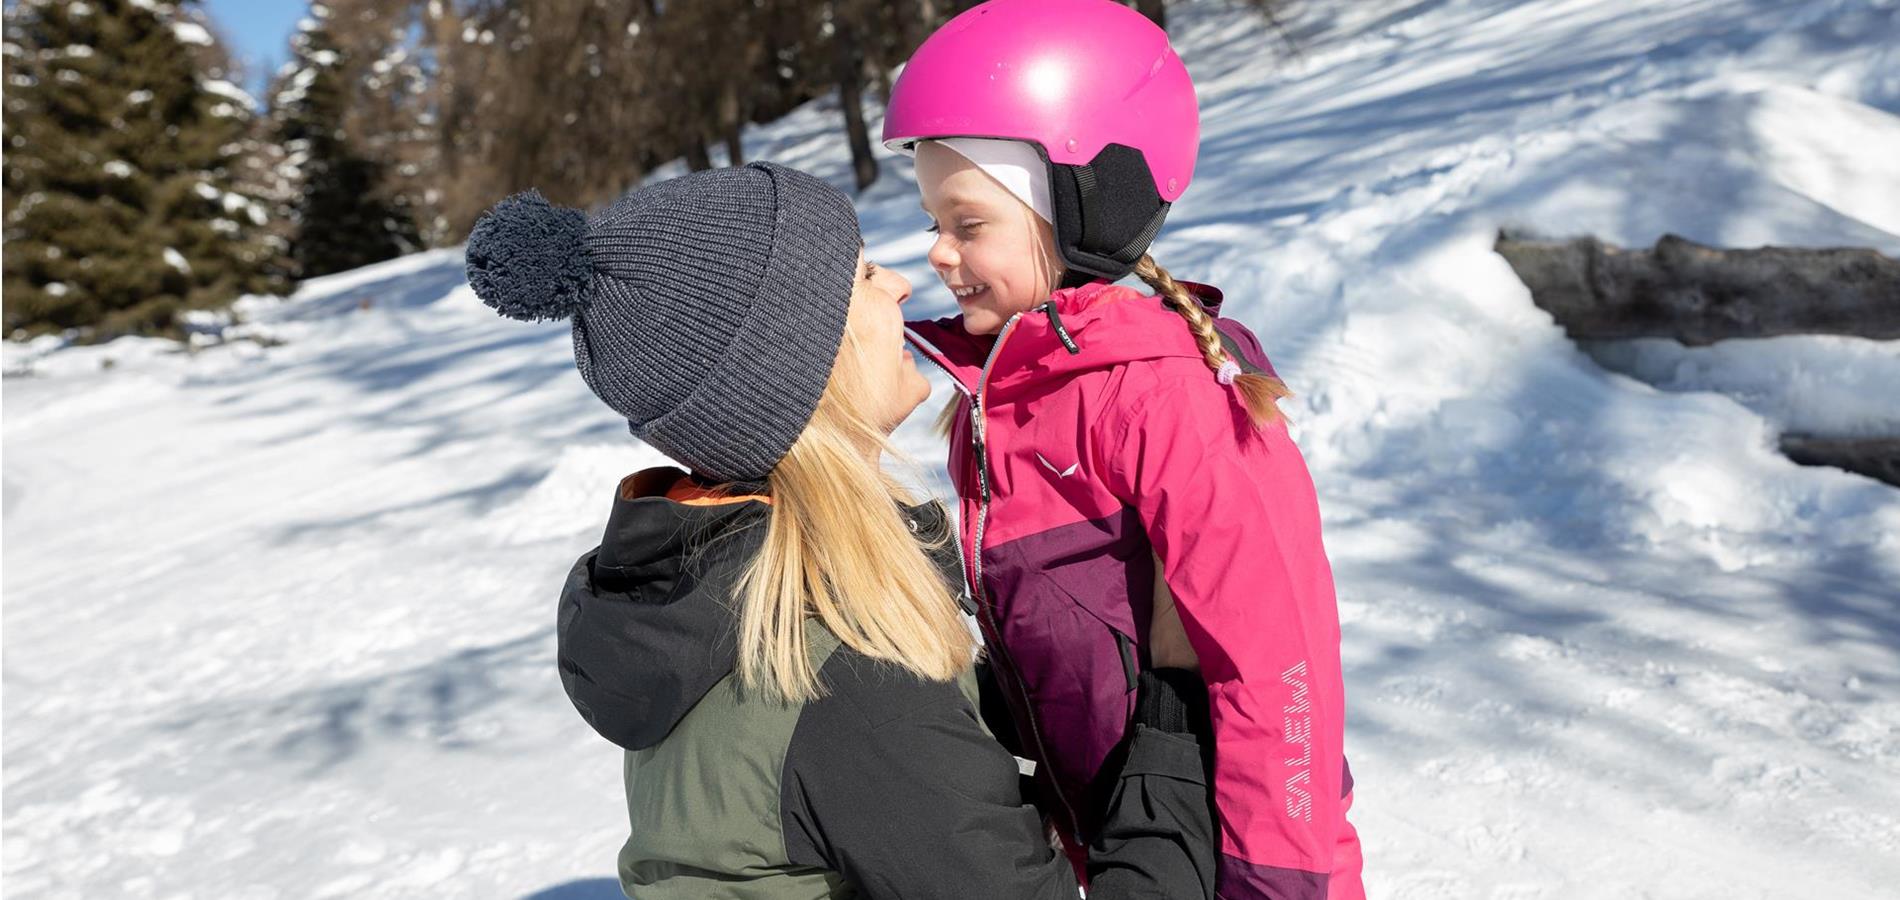 Mutter und Tochter im Winter in Vöran in Südtirol. Beide lachen und sehen sich an.  Das Mädchen ist circa 4 Jahre alt und trägt einen pinken Skianzug mit pinkem Helm.